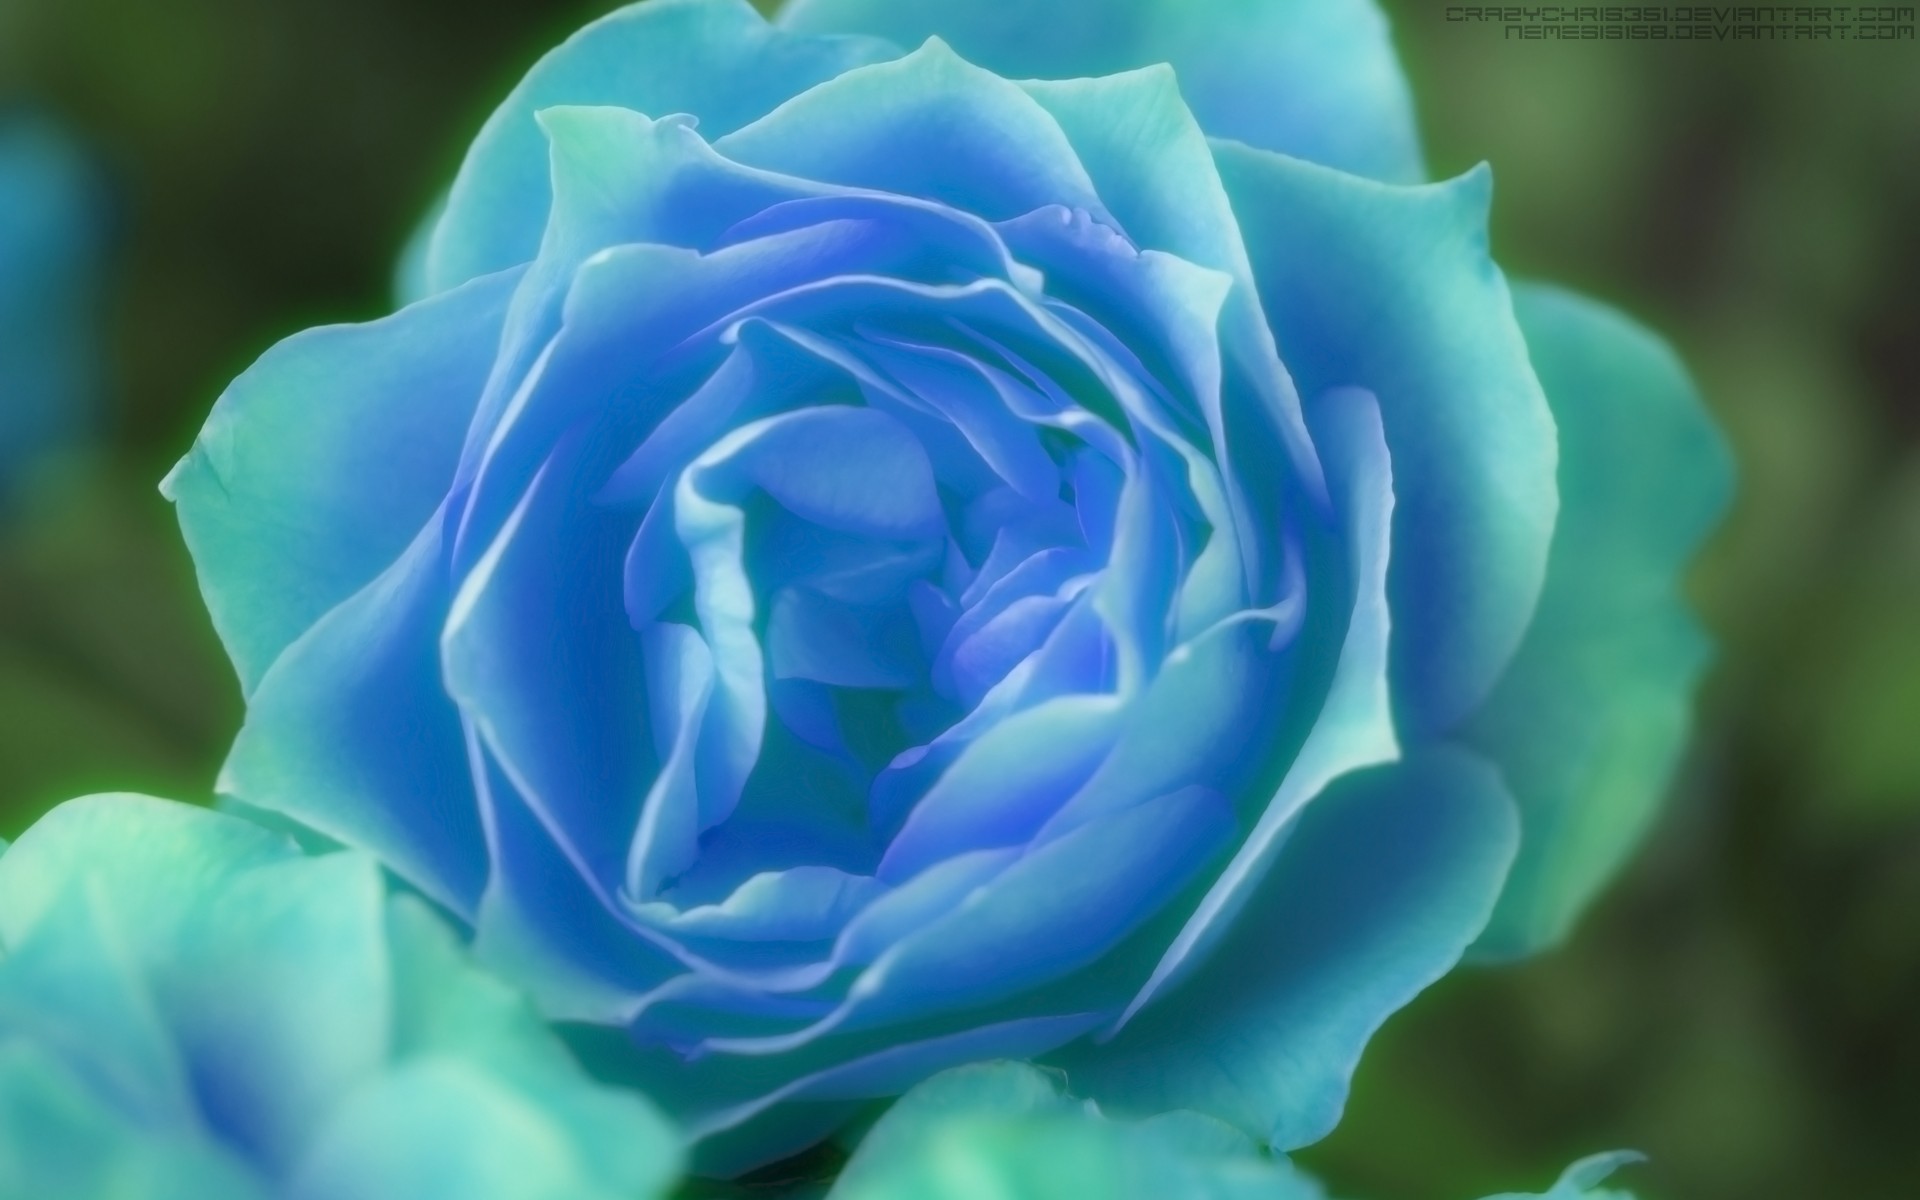 artistic, rose, blue flower, blue rose Full HD